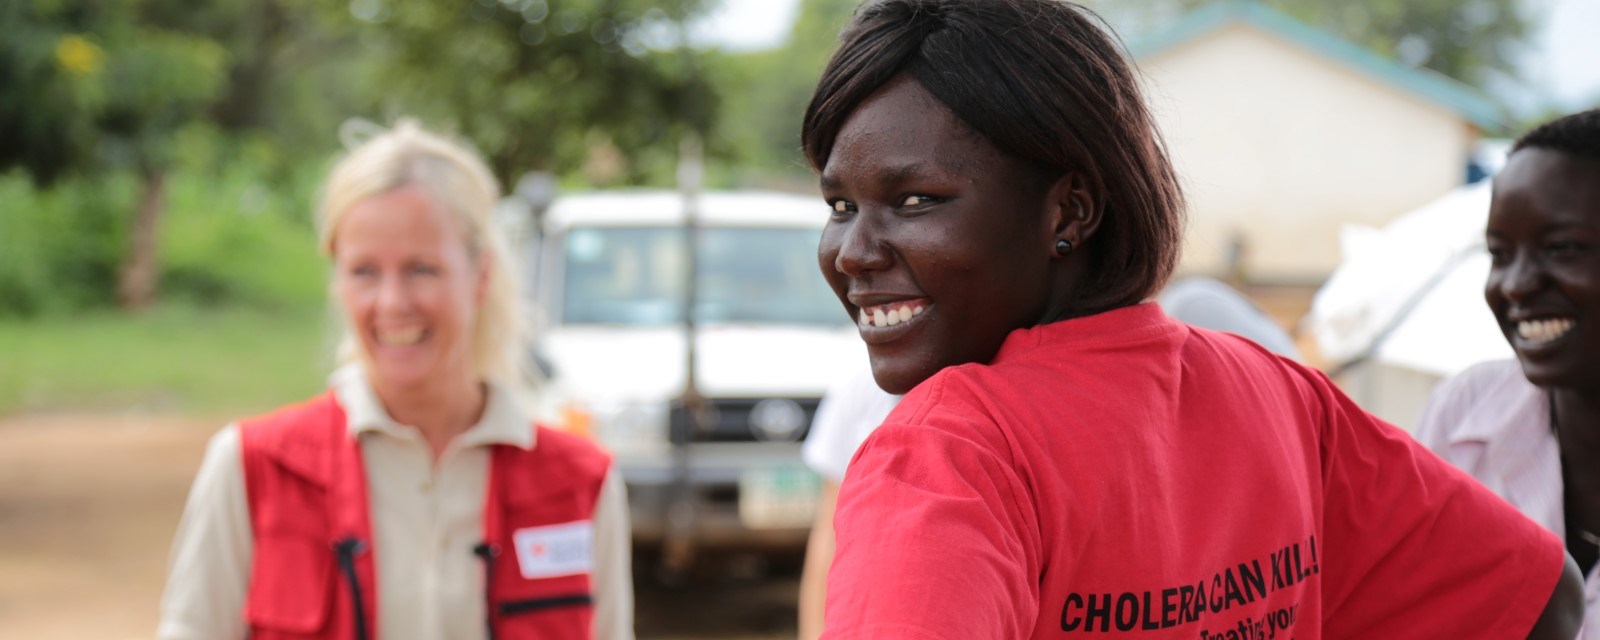 En sør-sudansk kvinner snur seg og smiler til kamera ute i felten. På T-skjorten står det "kolera kan ta liv"